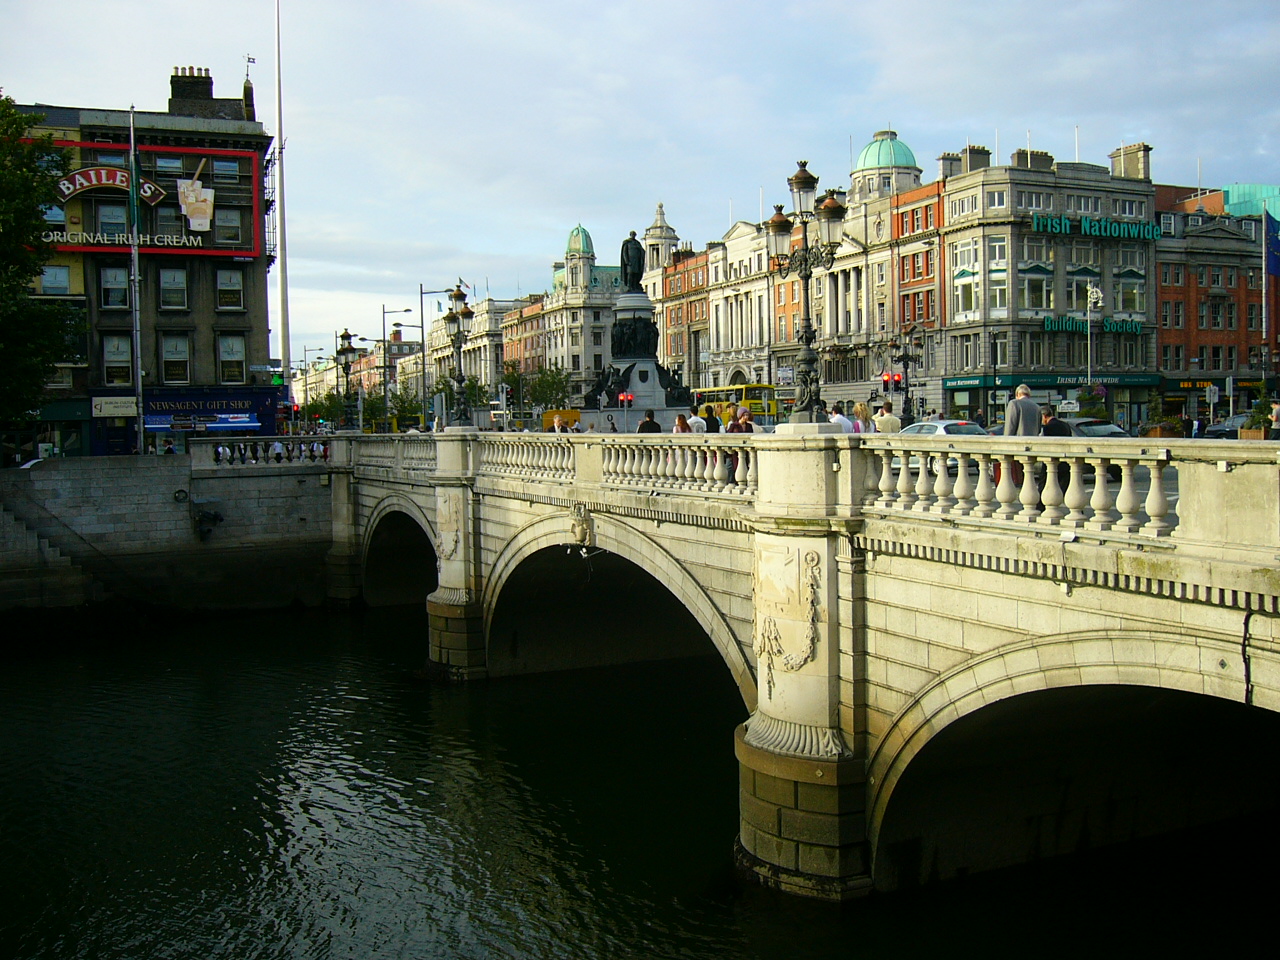 Dublin, Ireland (photo credit: CN/flickr)